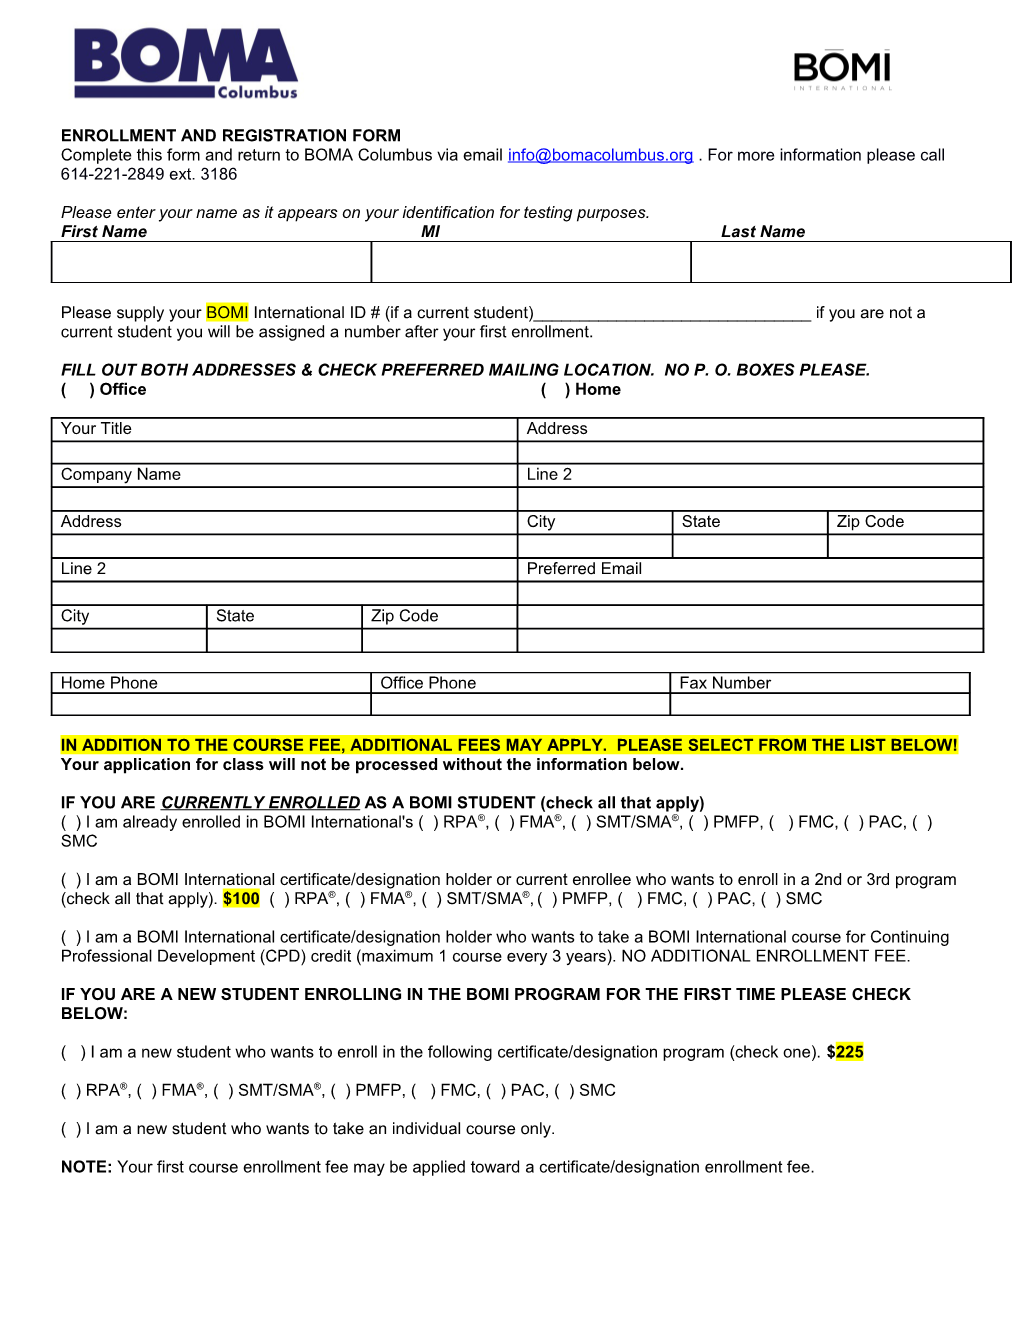 Enrollment and Registration Form